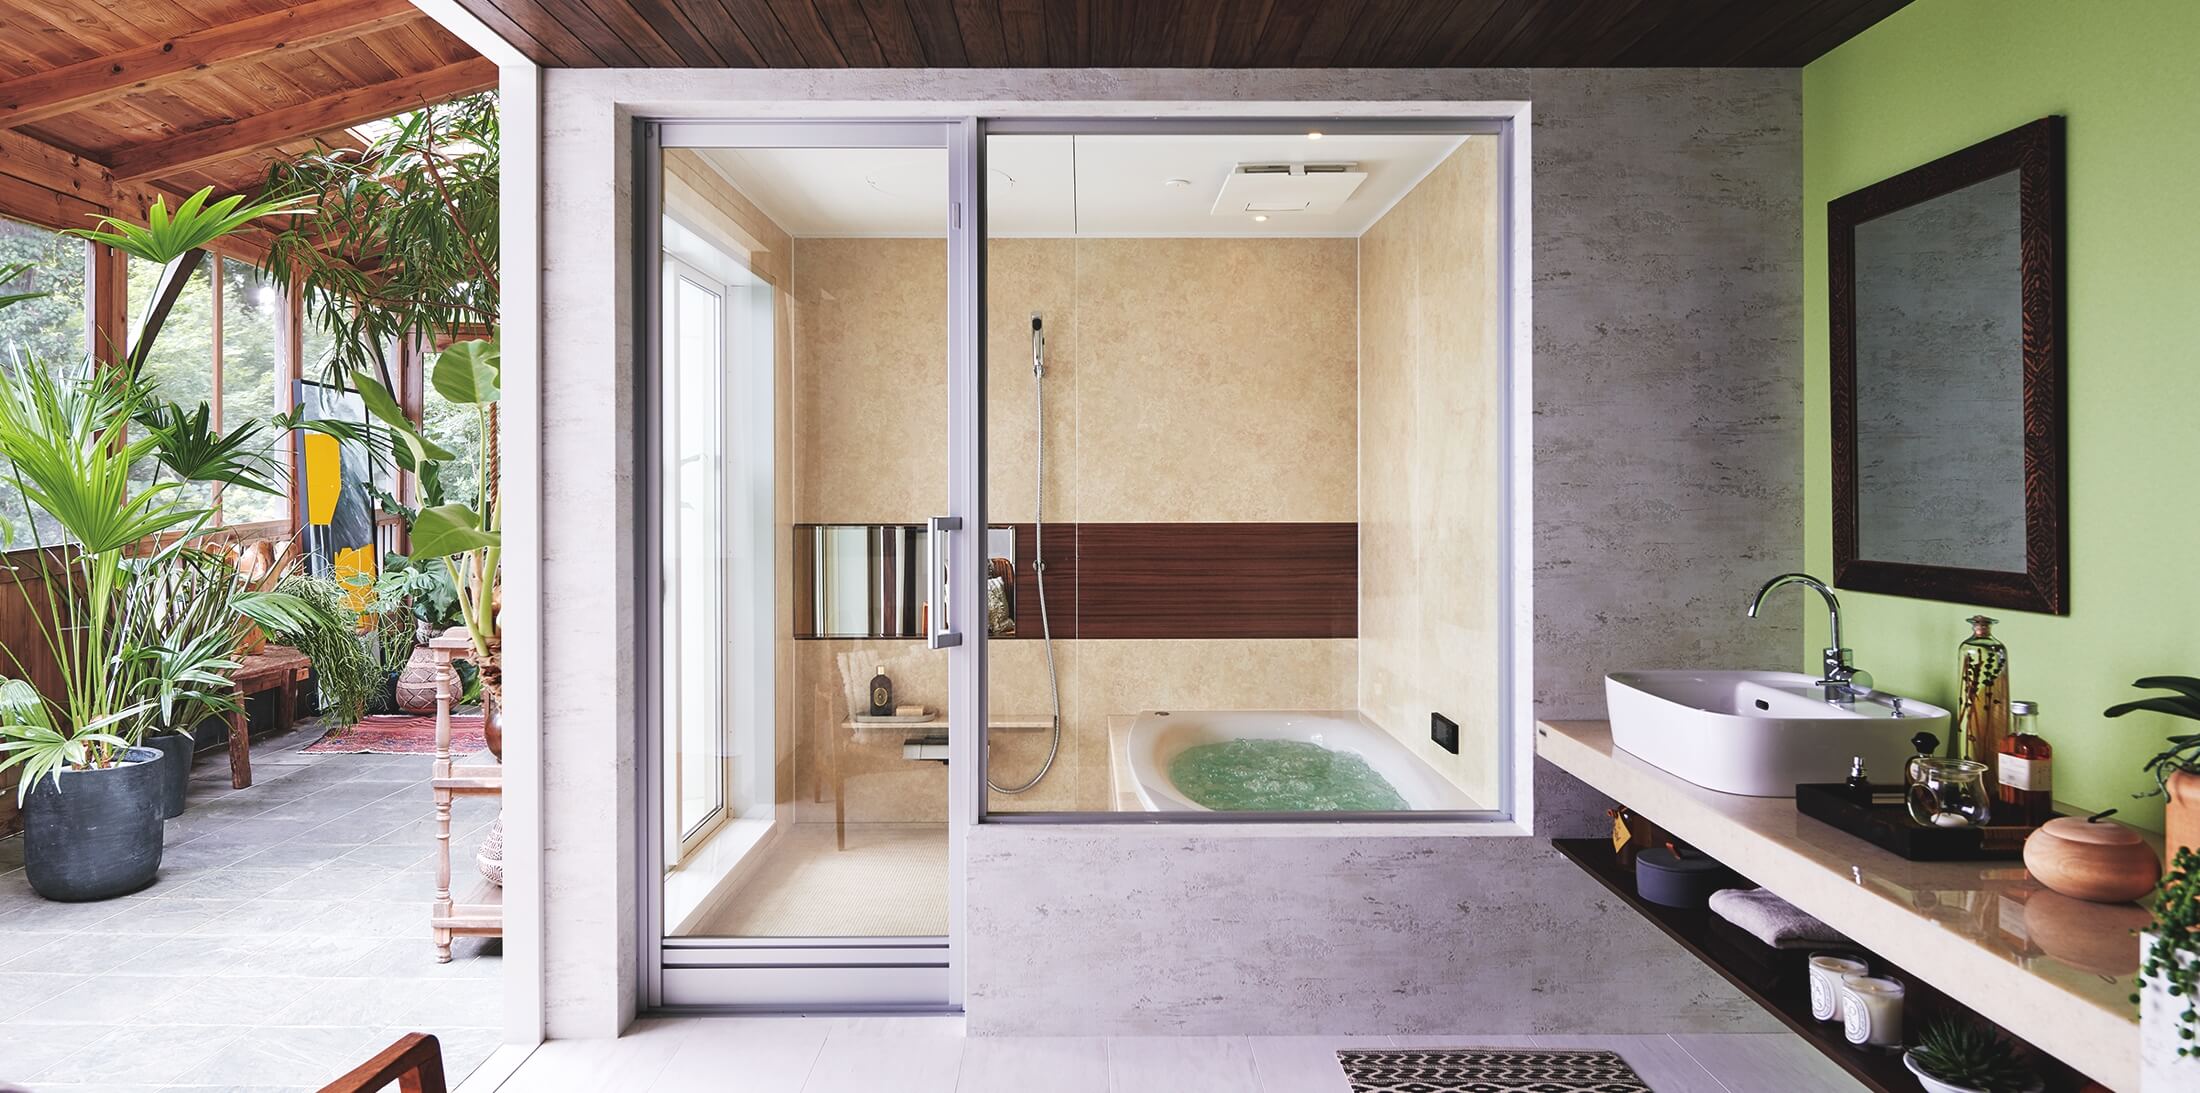 Ｌクラス バスルーム | バスルーム | 住まいの設備と建材 | Panasonic